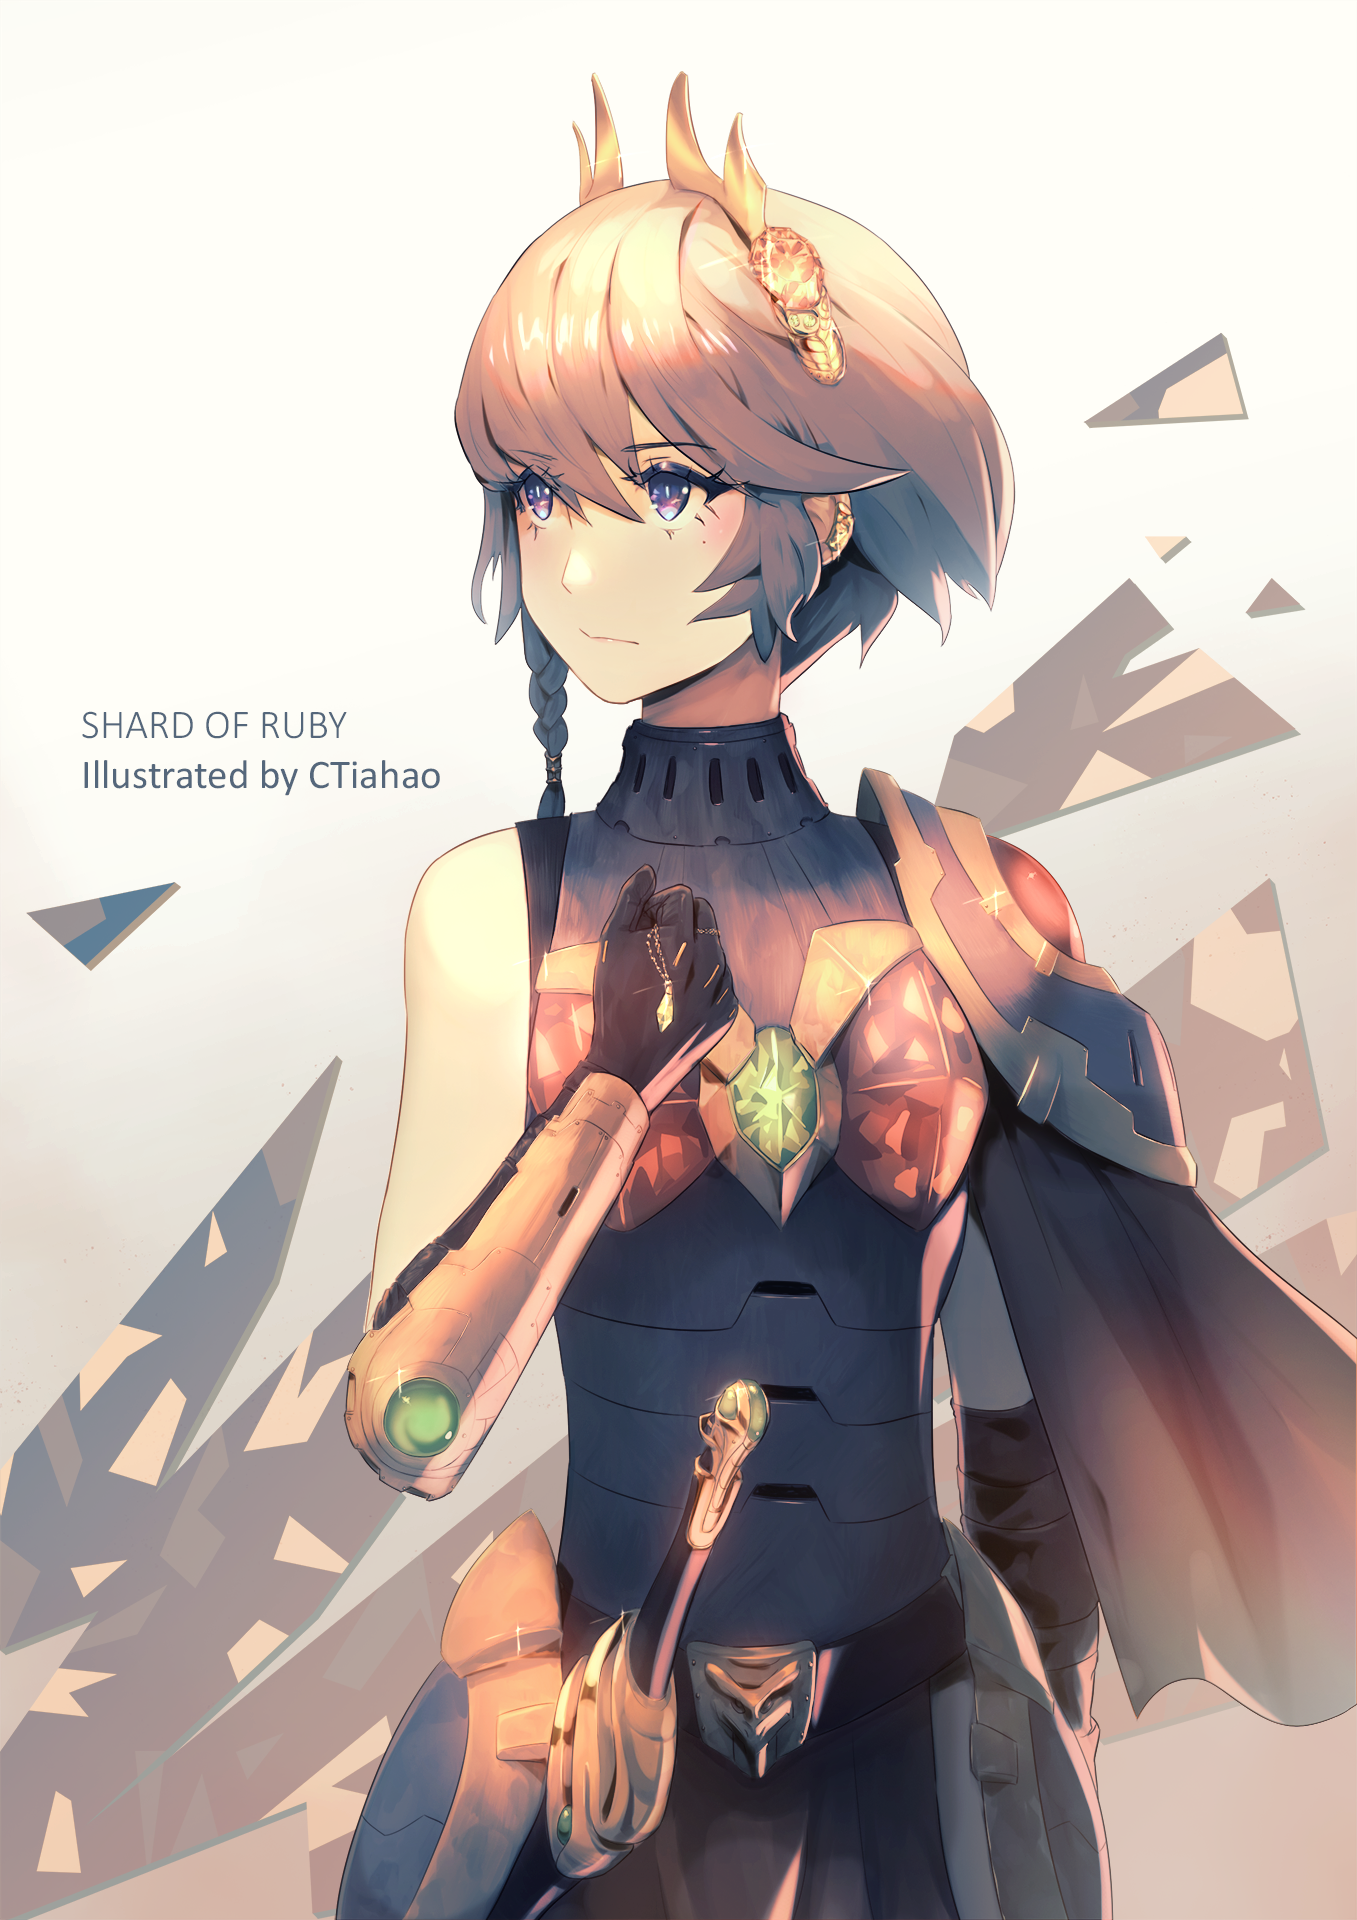 Shard of Ruby-characterCTiahao